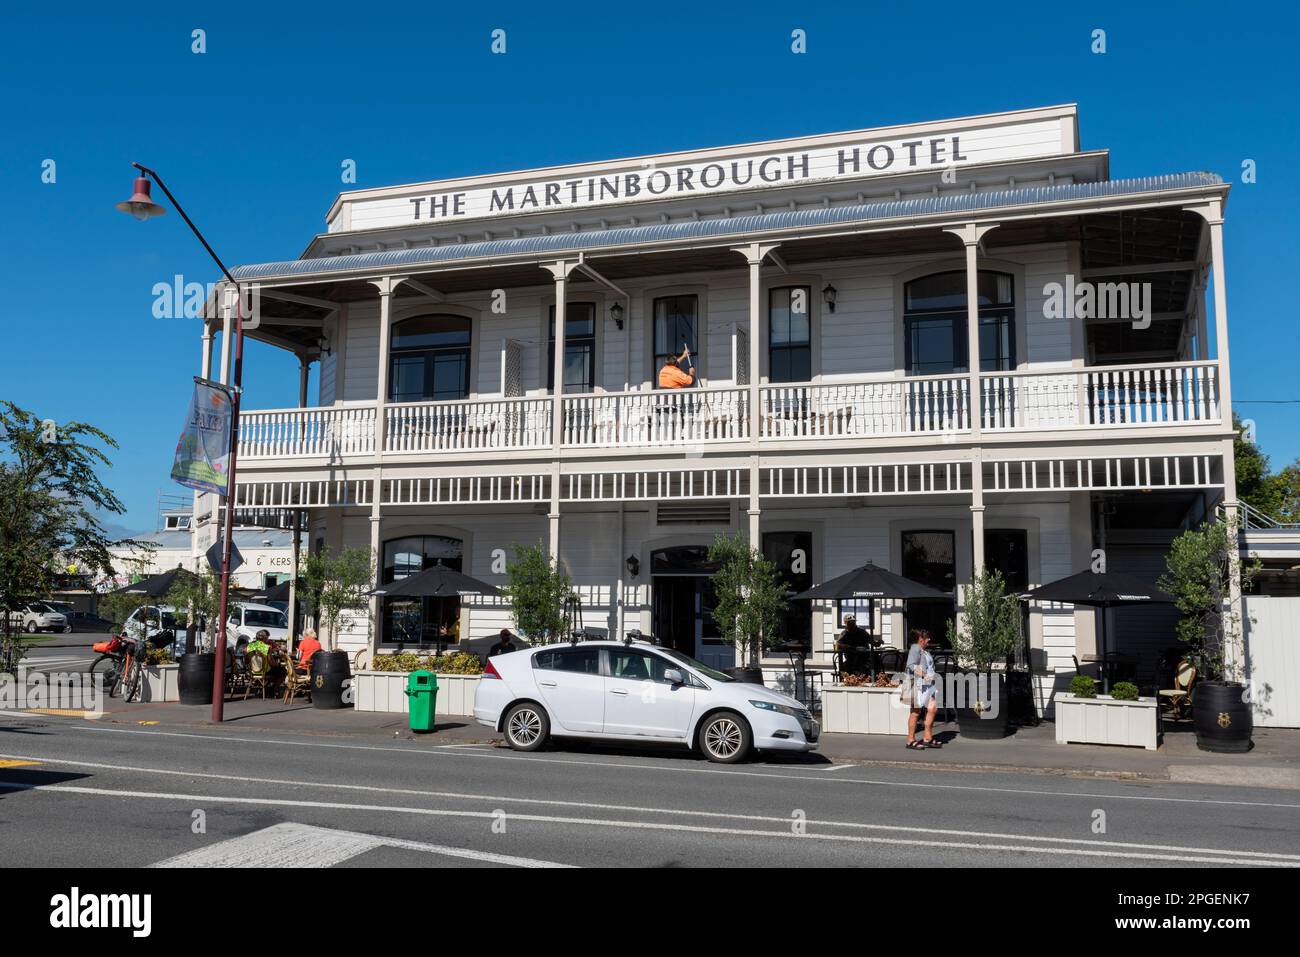 Martinborough Hotel, in Martinborough, einer Stadt im South Wairarapa District, in der Wellington Region von Neuseeland. Stockfoto